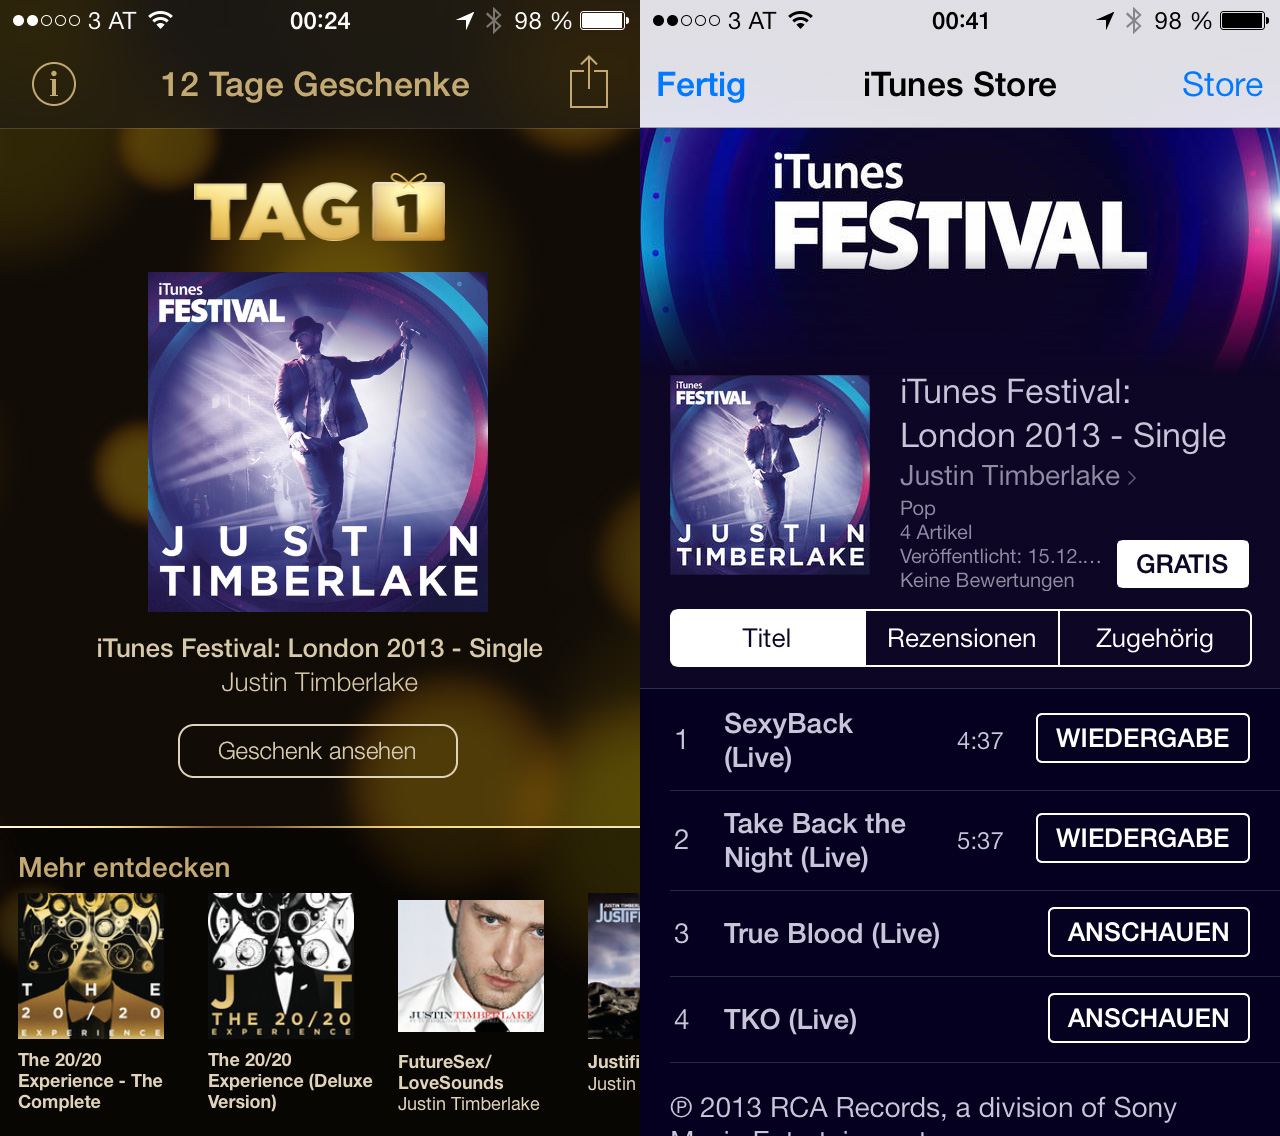 Kostenloses Album von Justin Timberlake in der iTunes 12 Tage Geschenke App, Hack4Life, Fabian Geissler